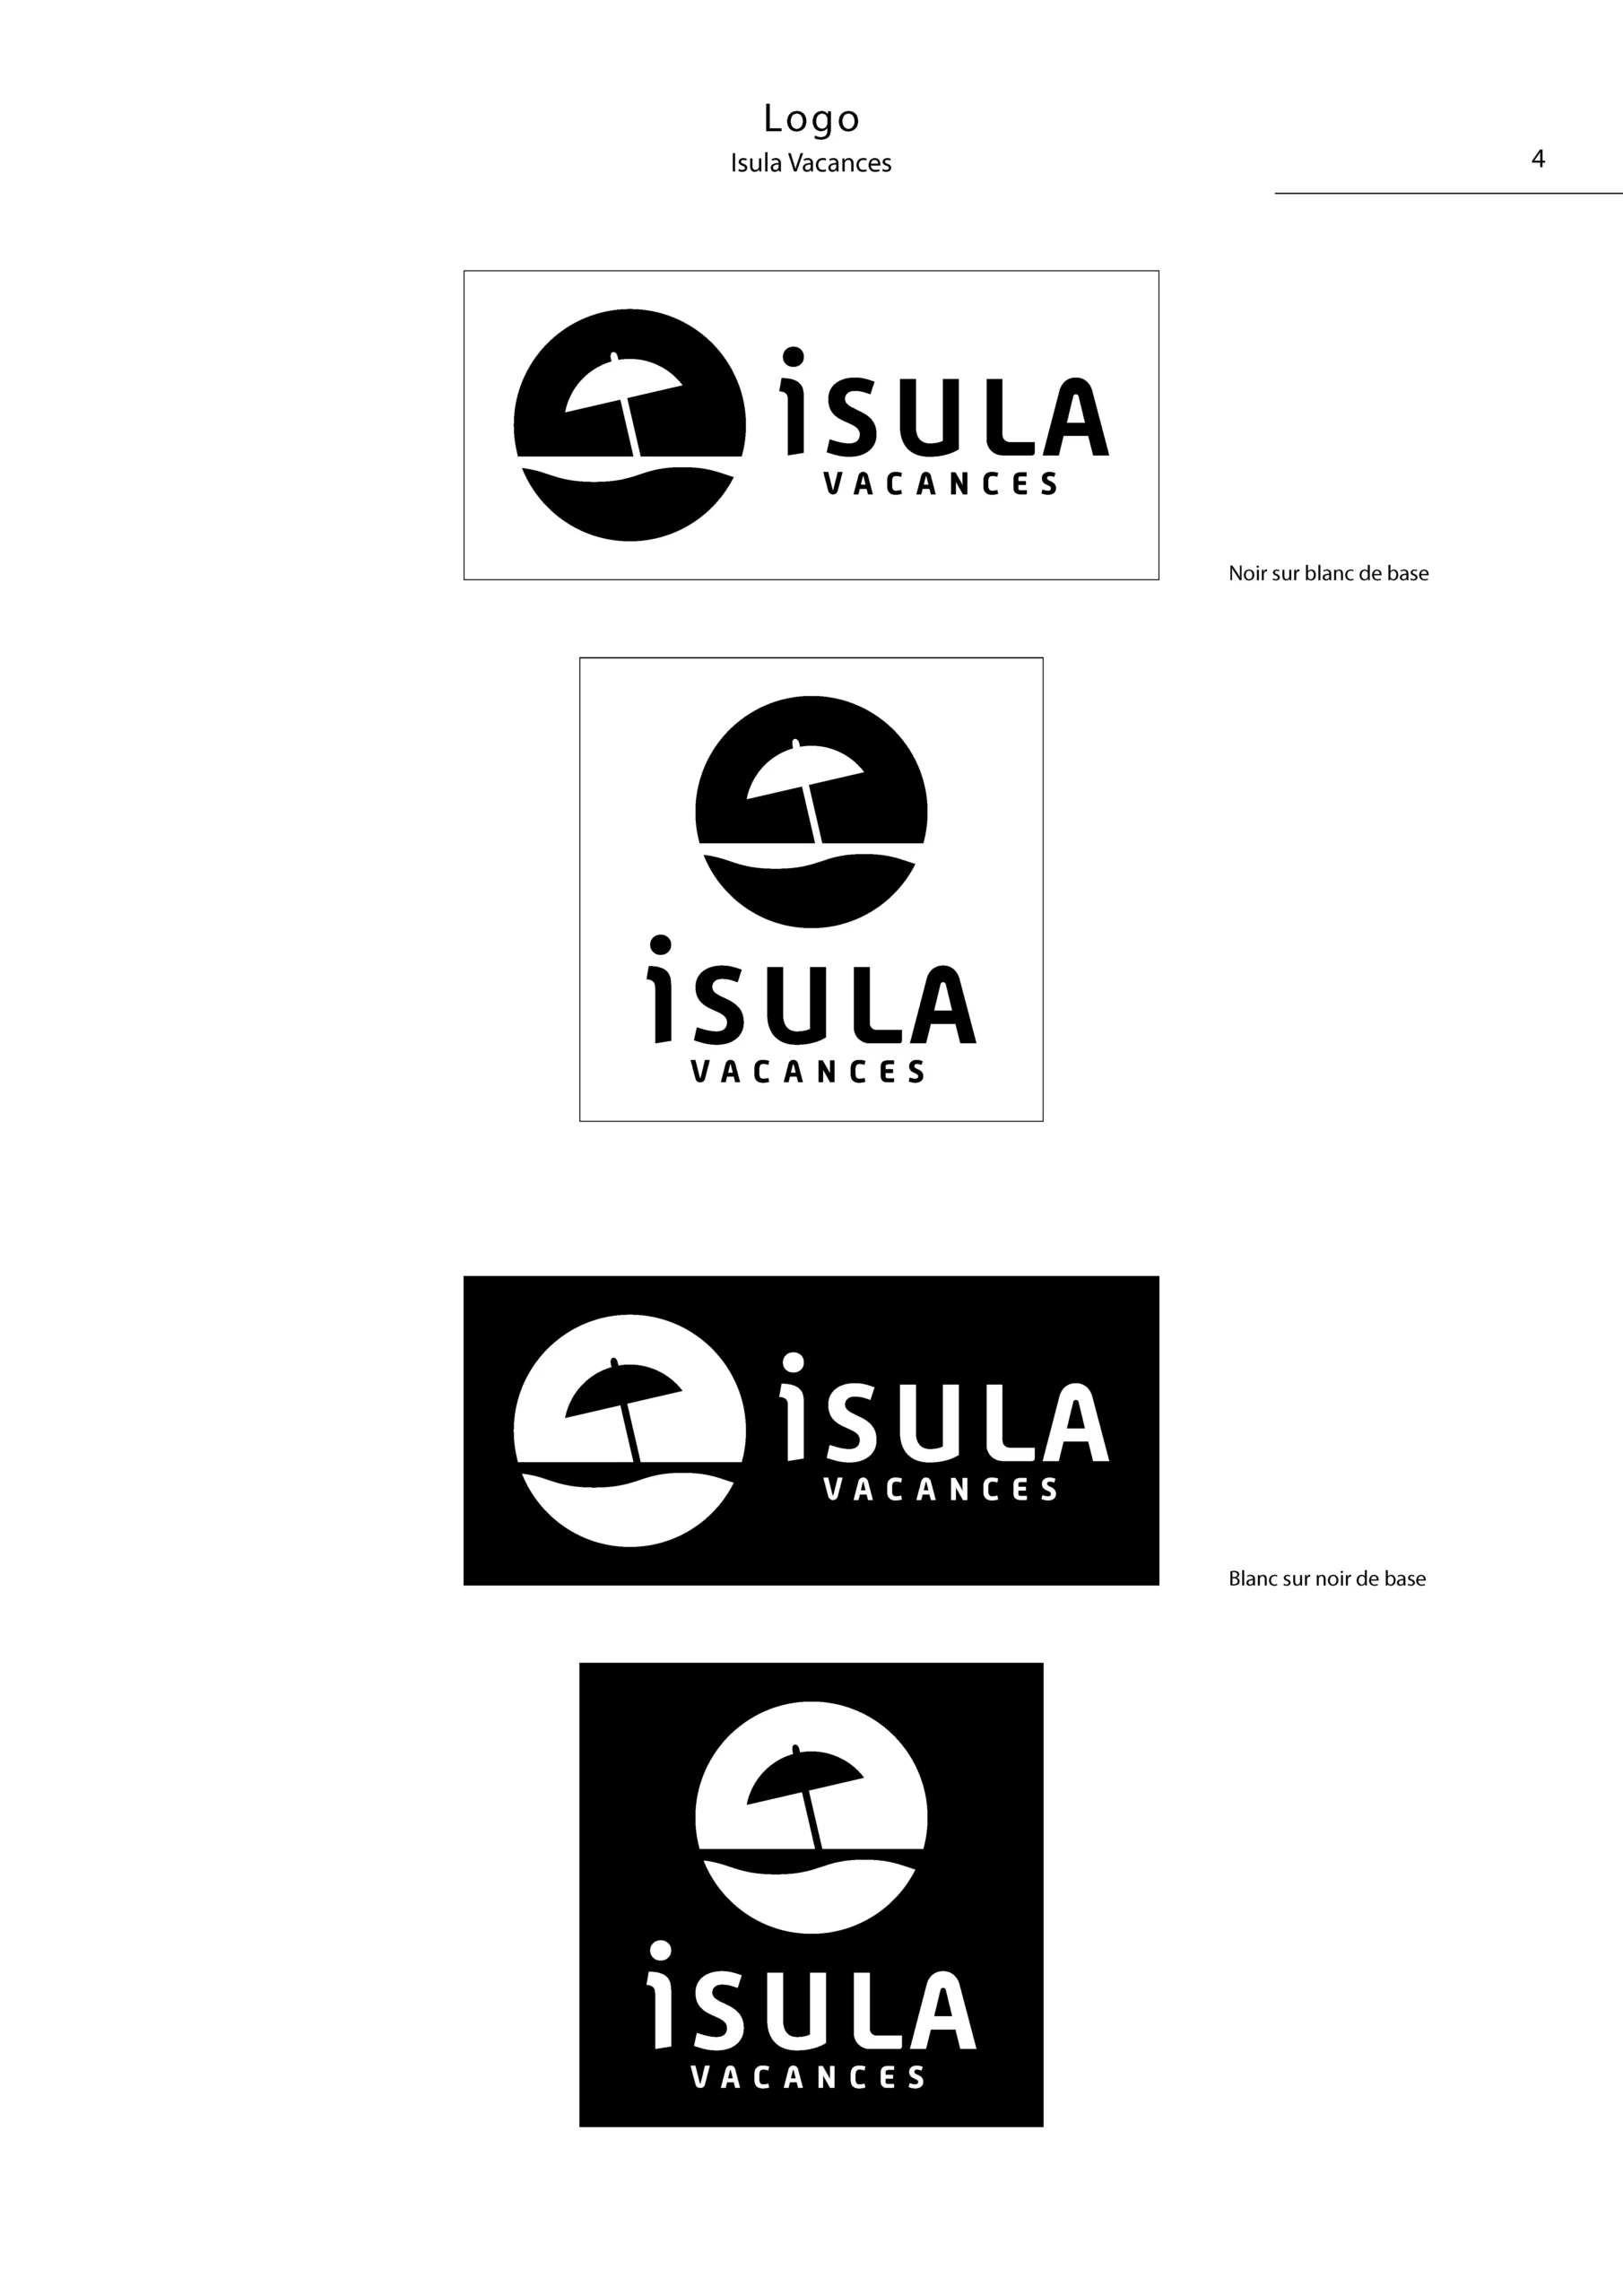 Charte graphique simplifiée du logo Isula Vacances Page 4